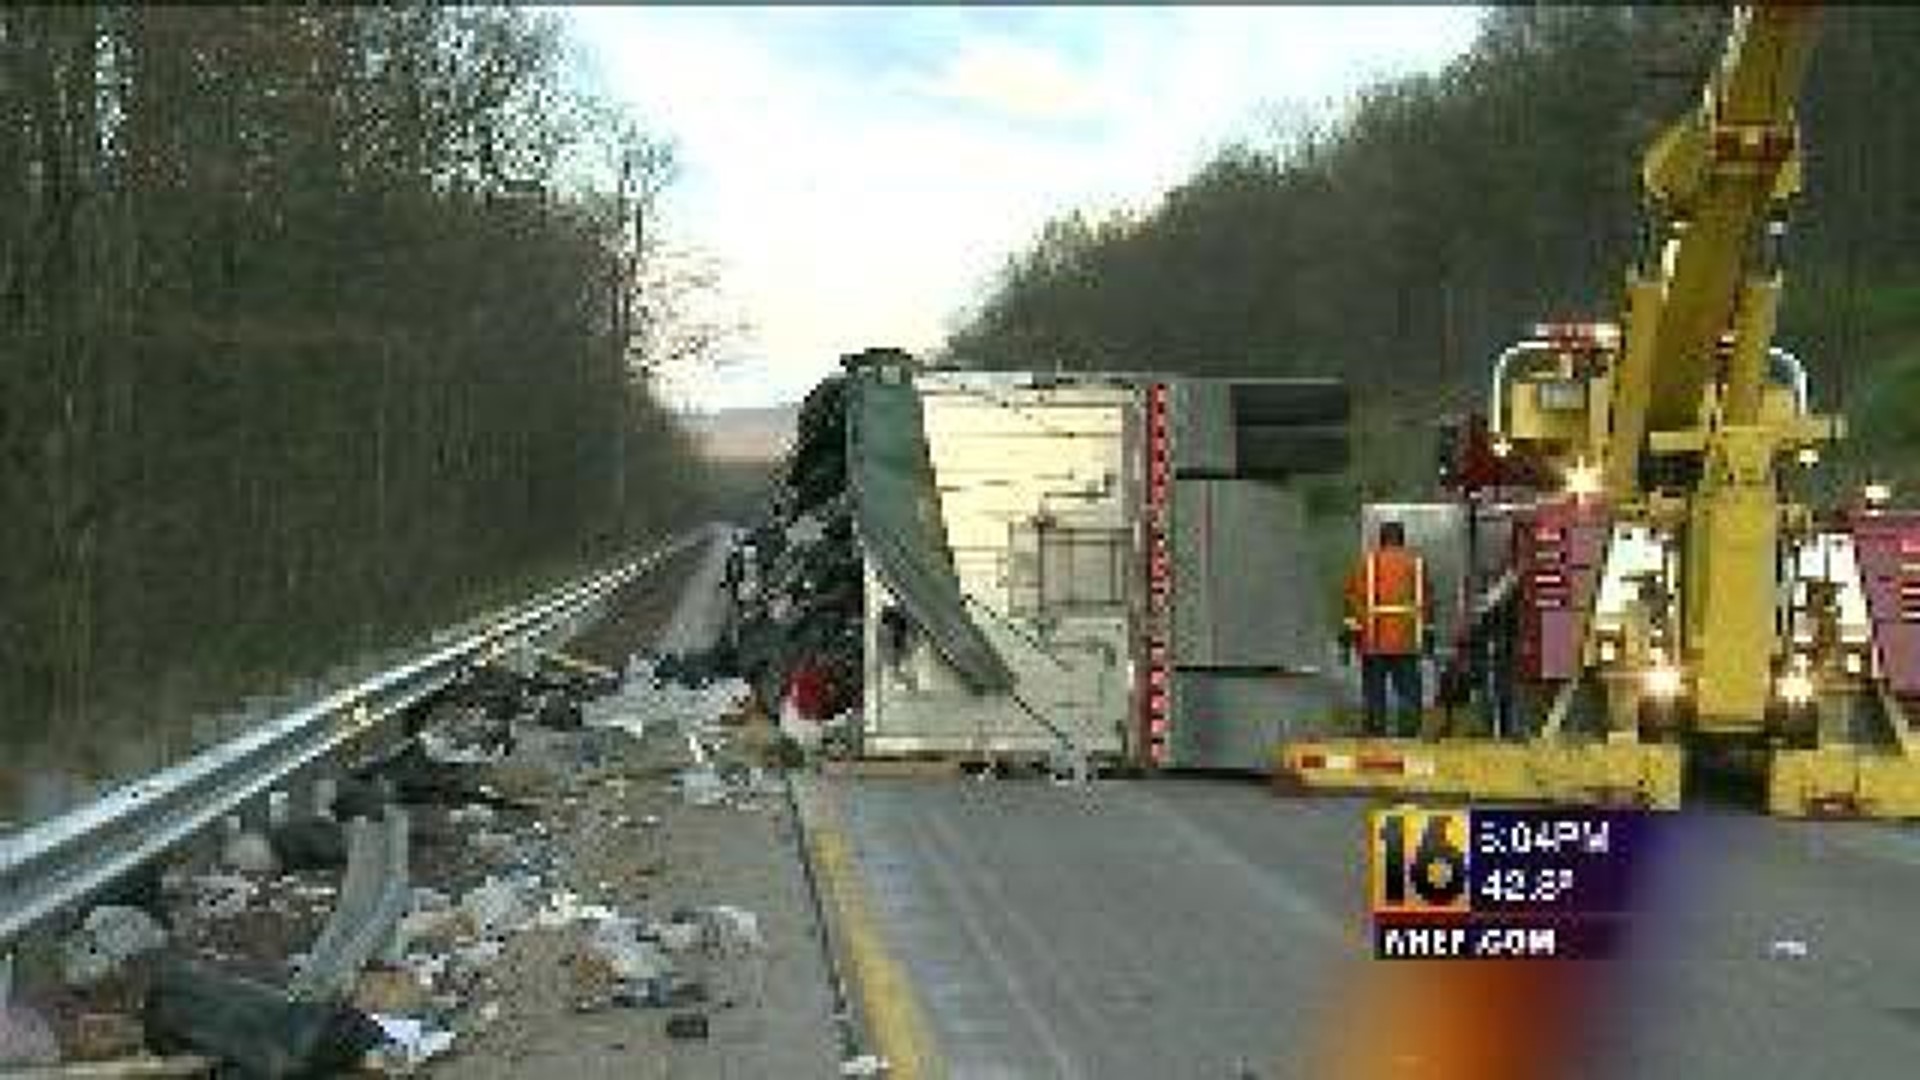 Crash Cleared on I-80